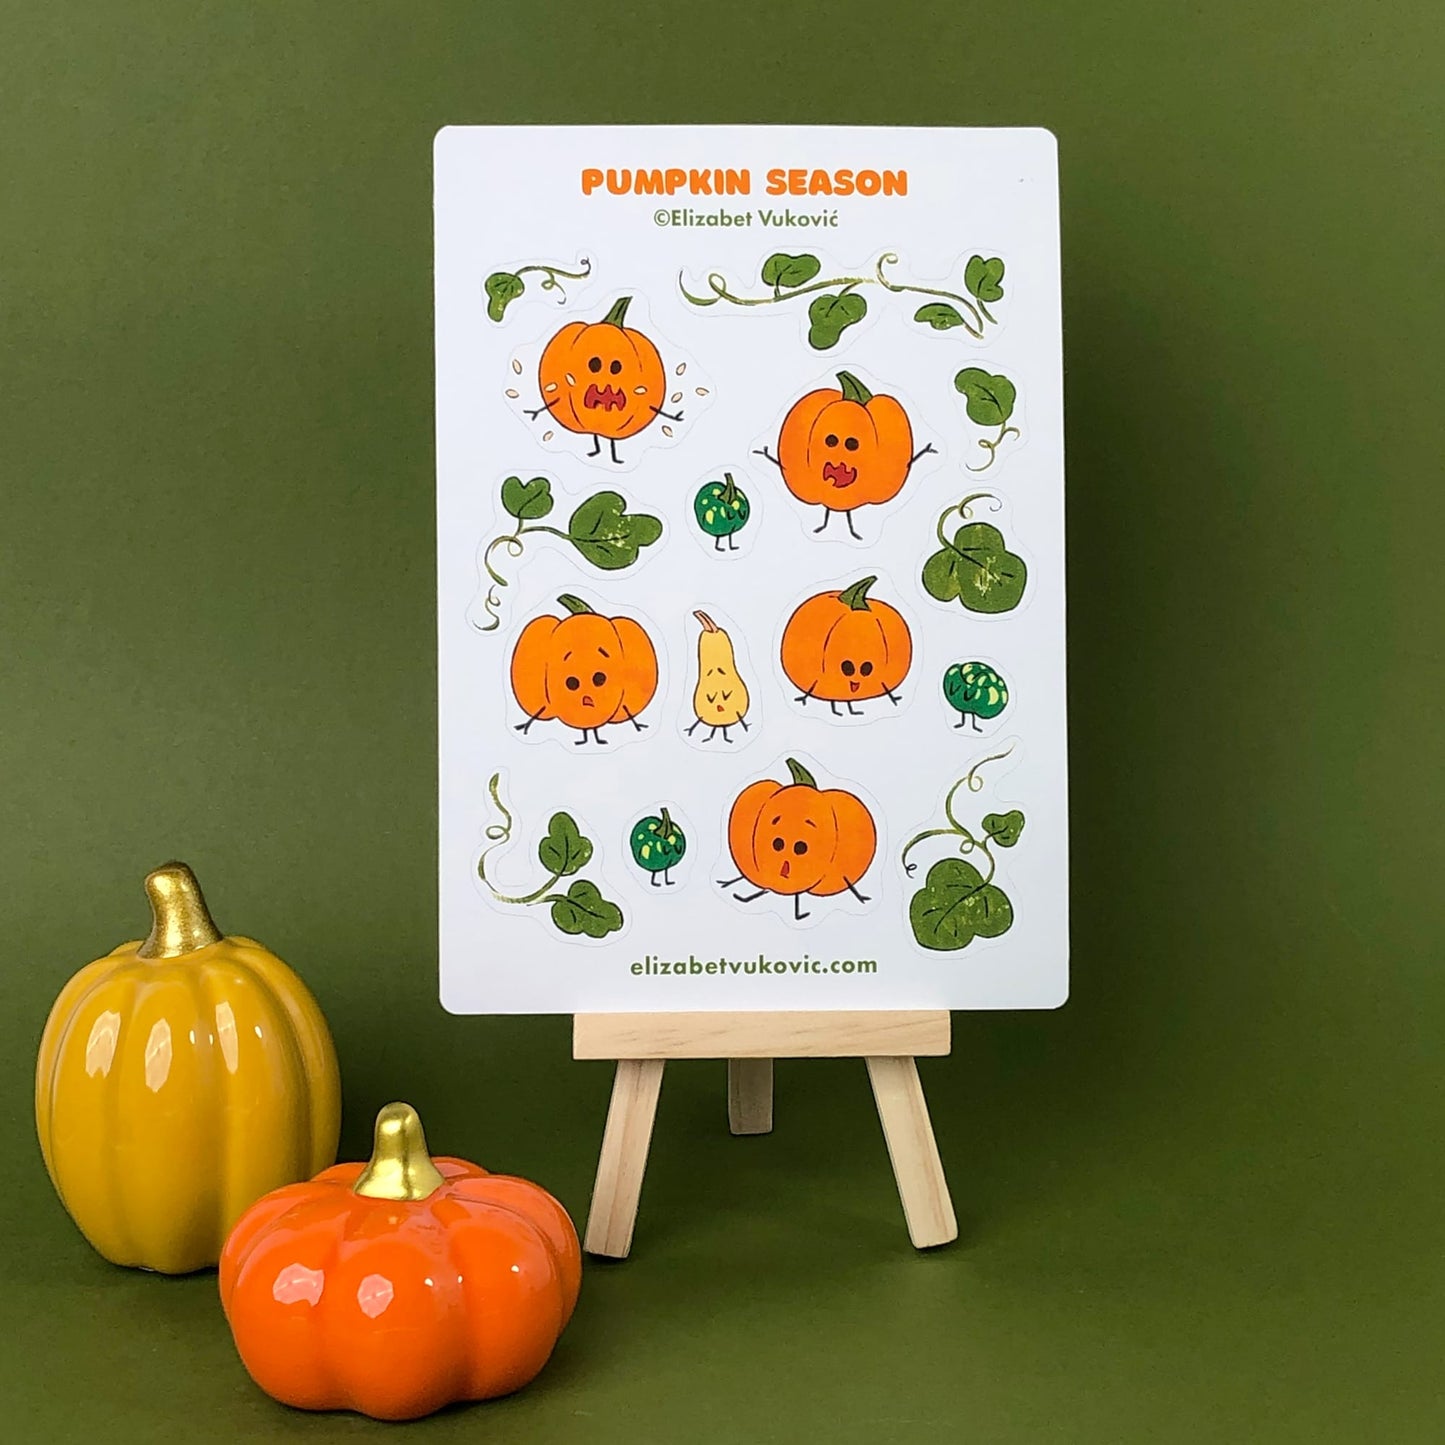 Pumpkin art sticker sheet on a easel.